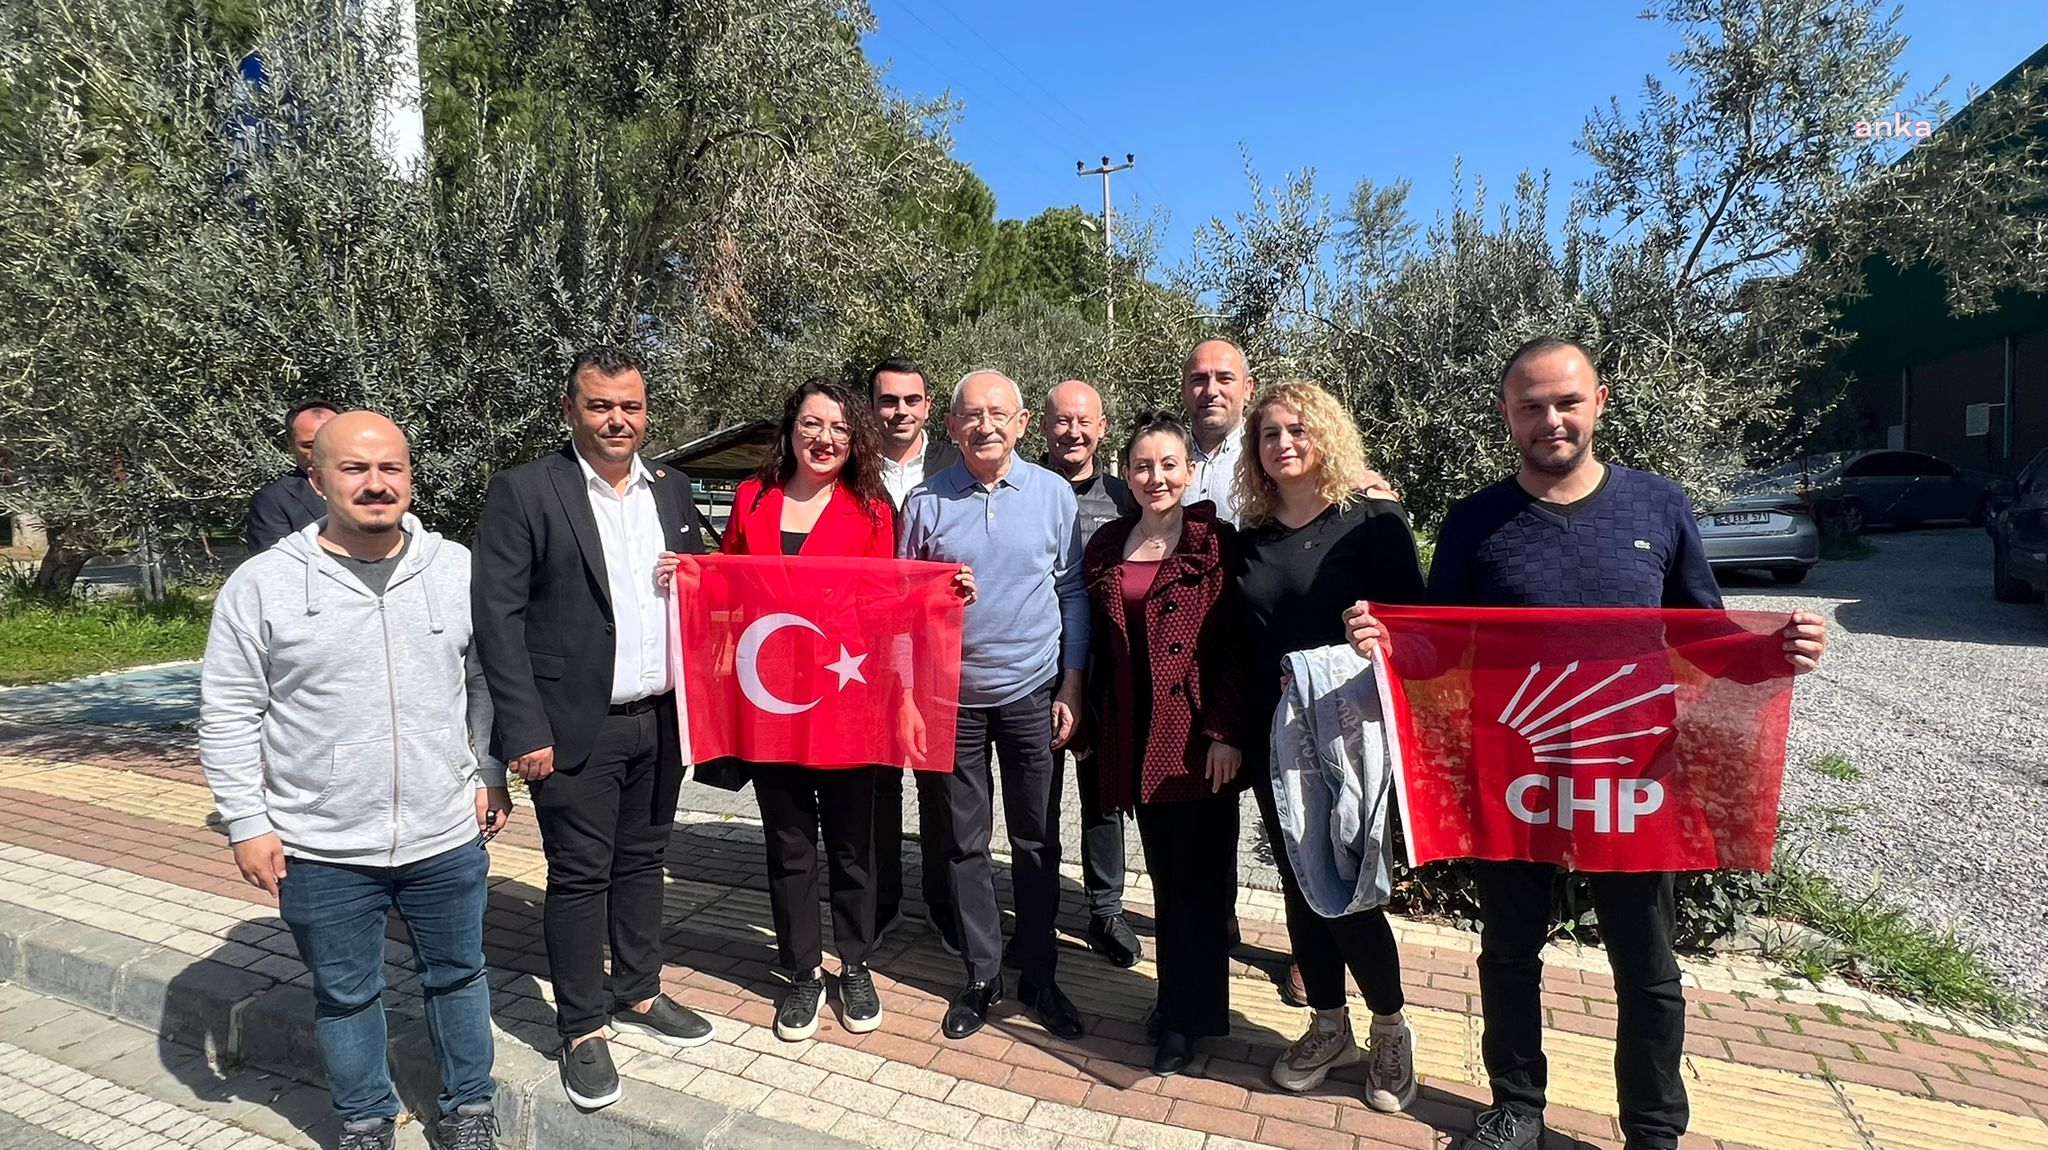 Bir grup genç, Kılıçdaroğlu’na CHP bayrağı hediye etti